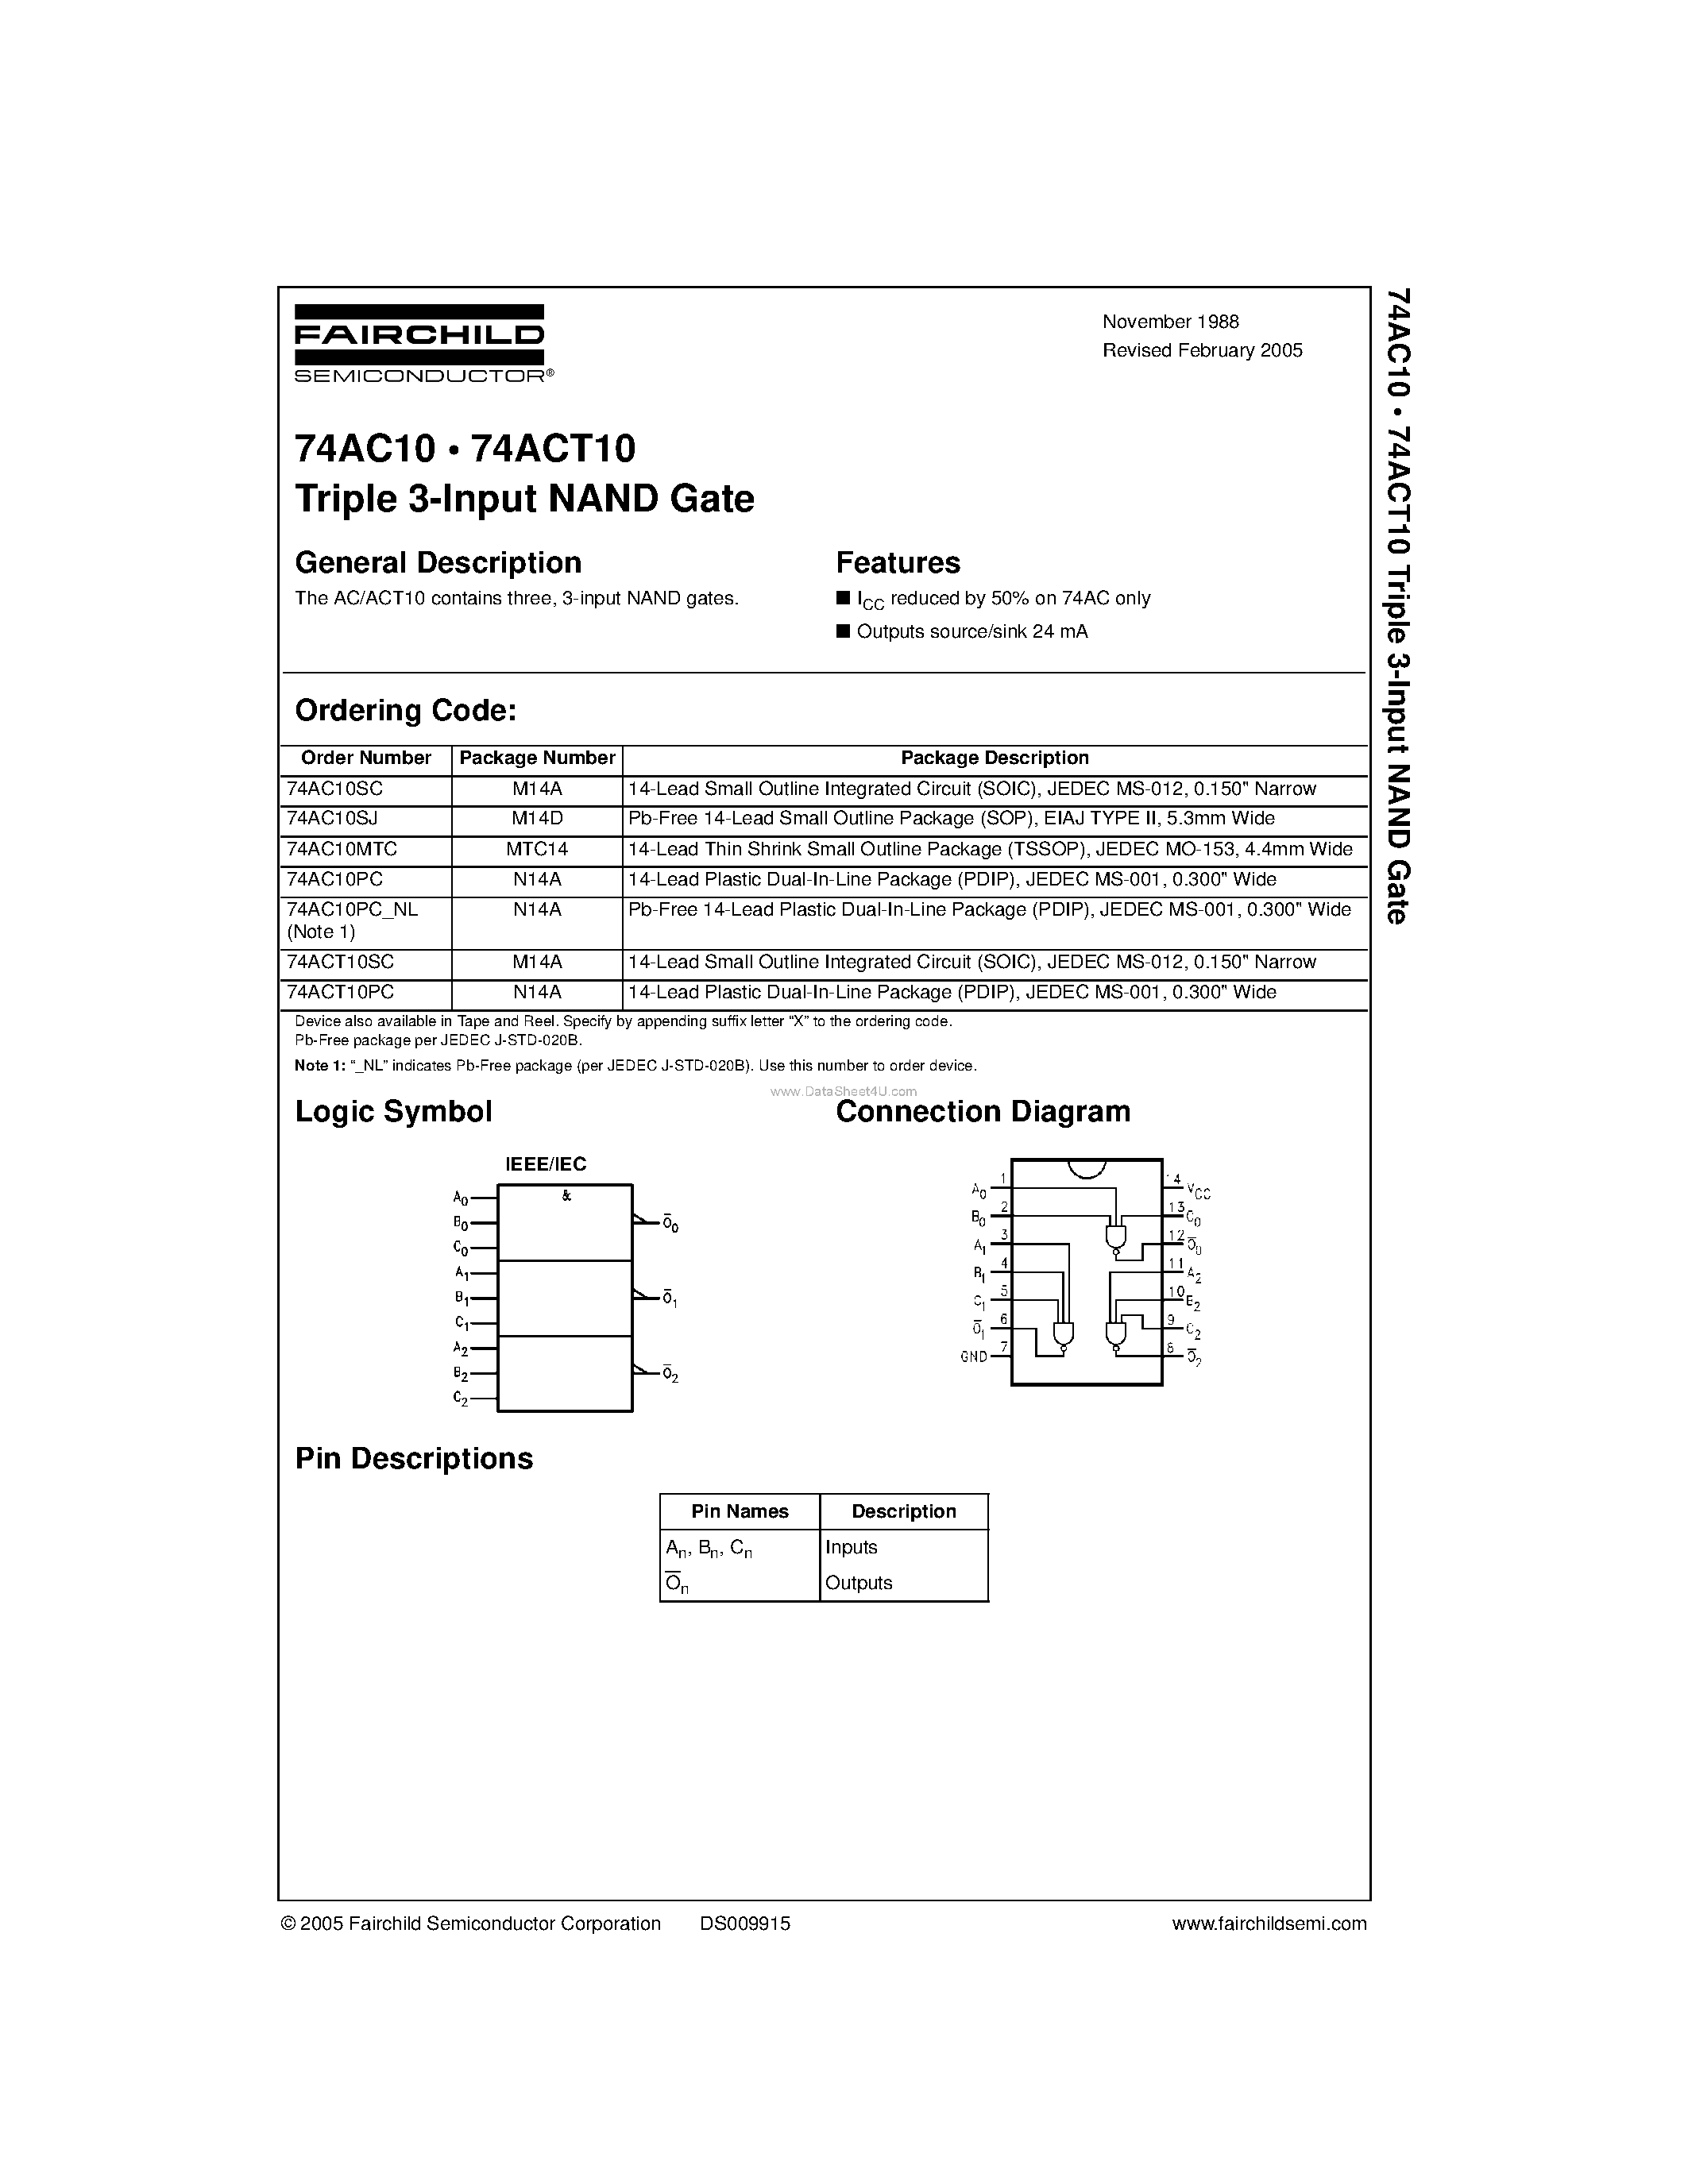 Datasheet 74ACT10PC - Triple 3-Input NAND Gate page 1